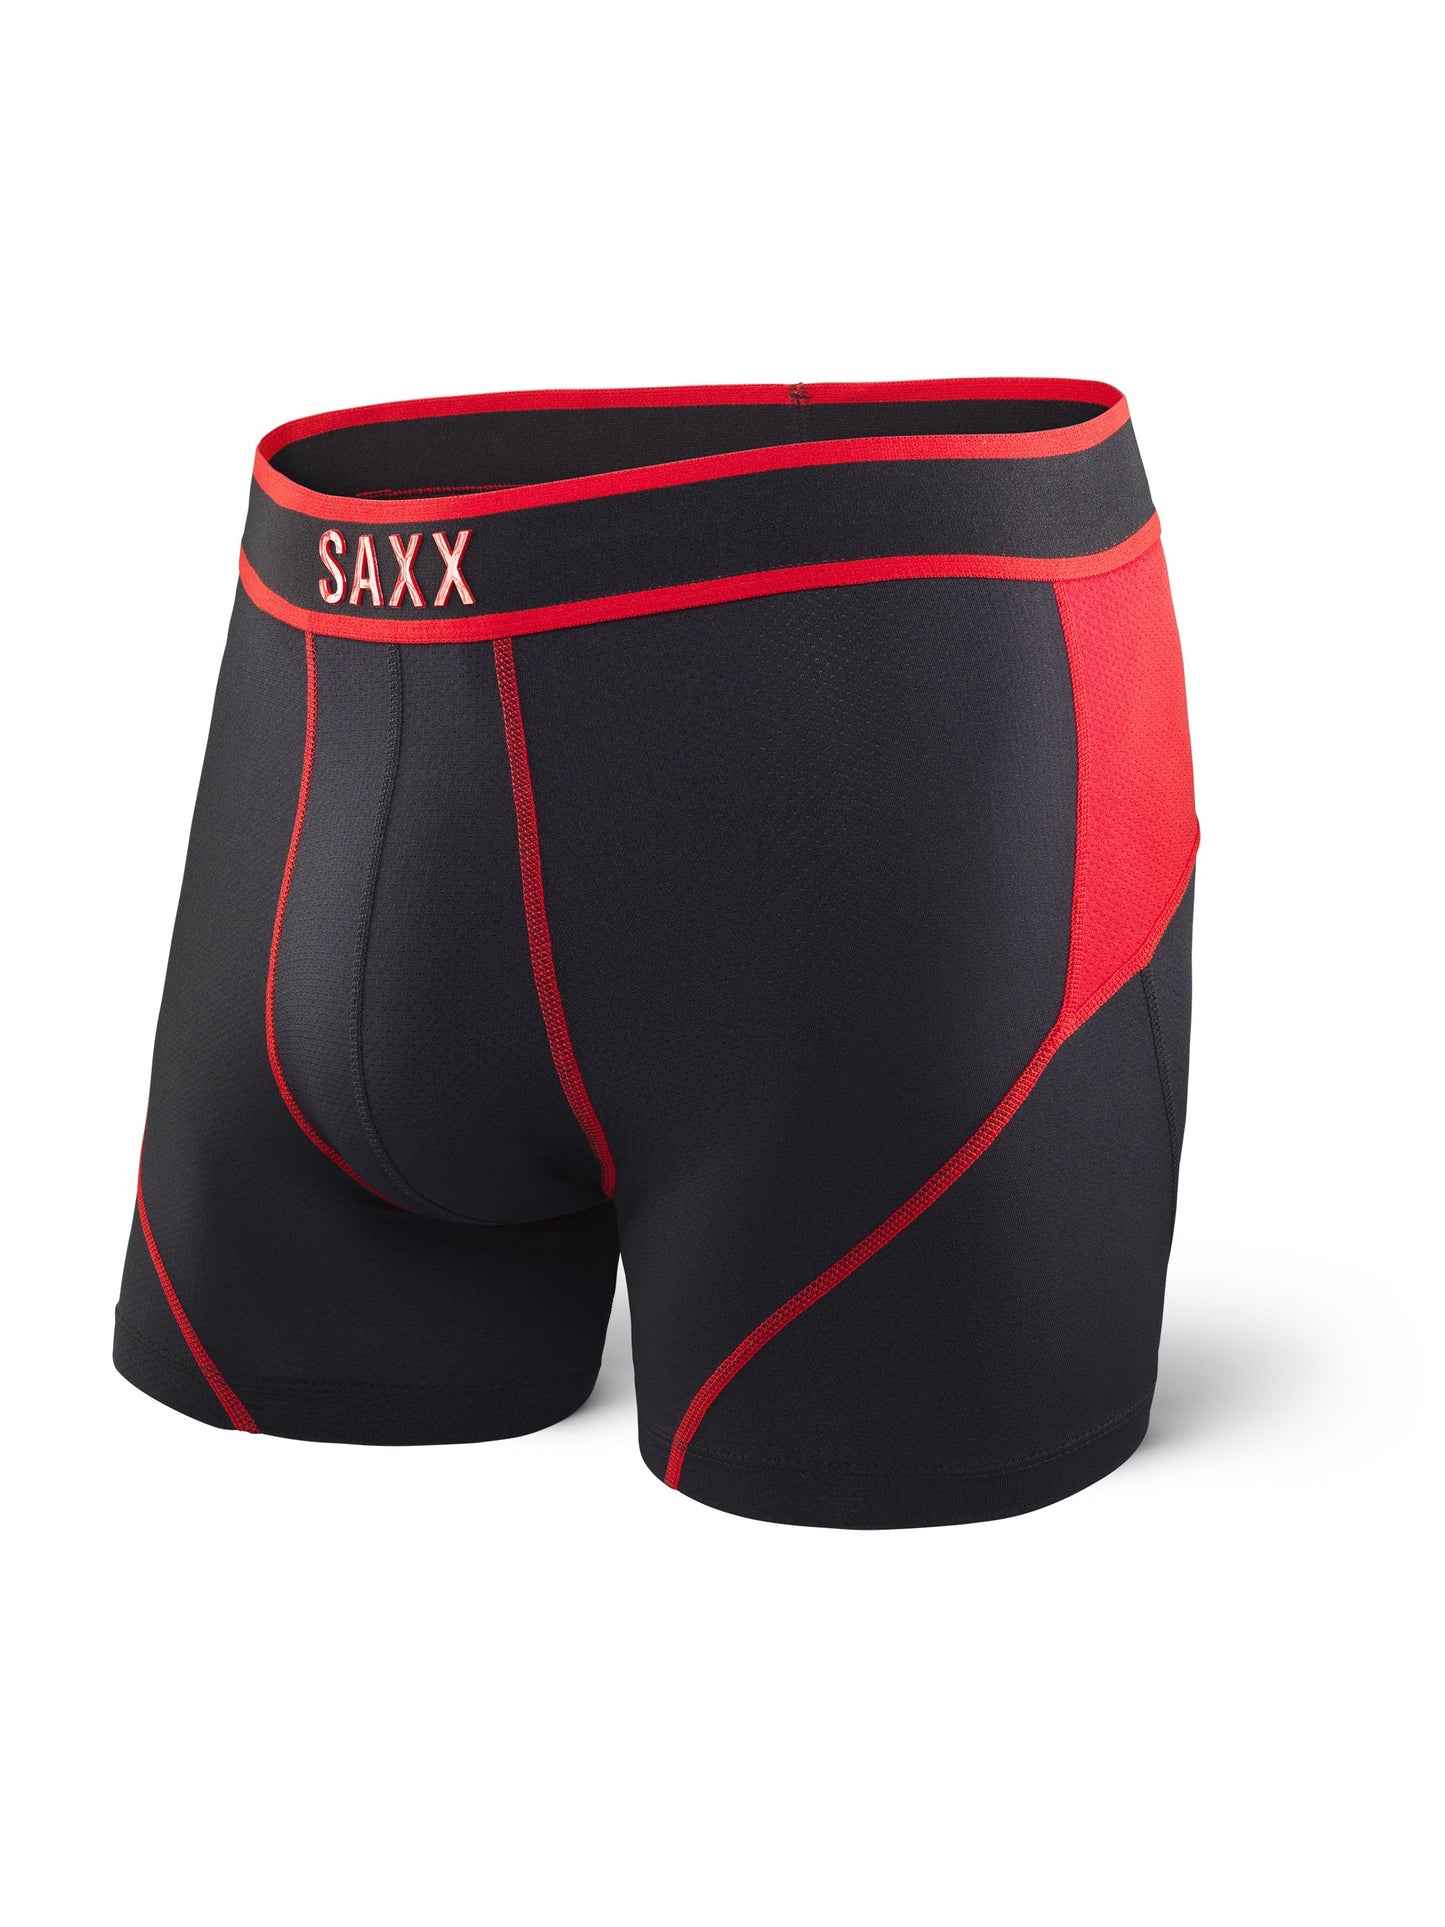 SAXX-BOXEUR KINETIC SXBB27-REB